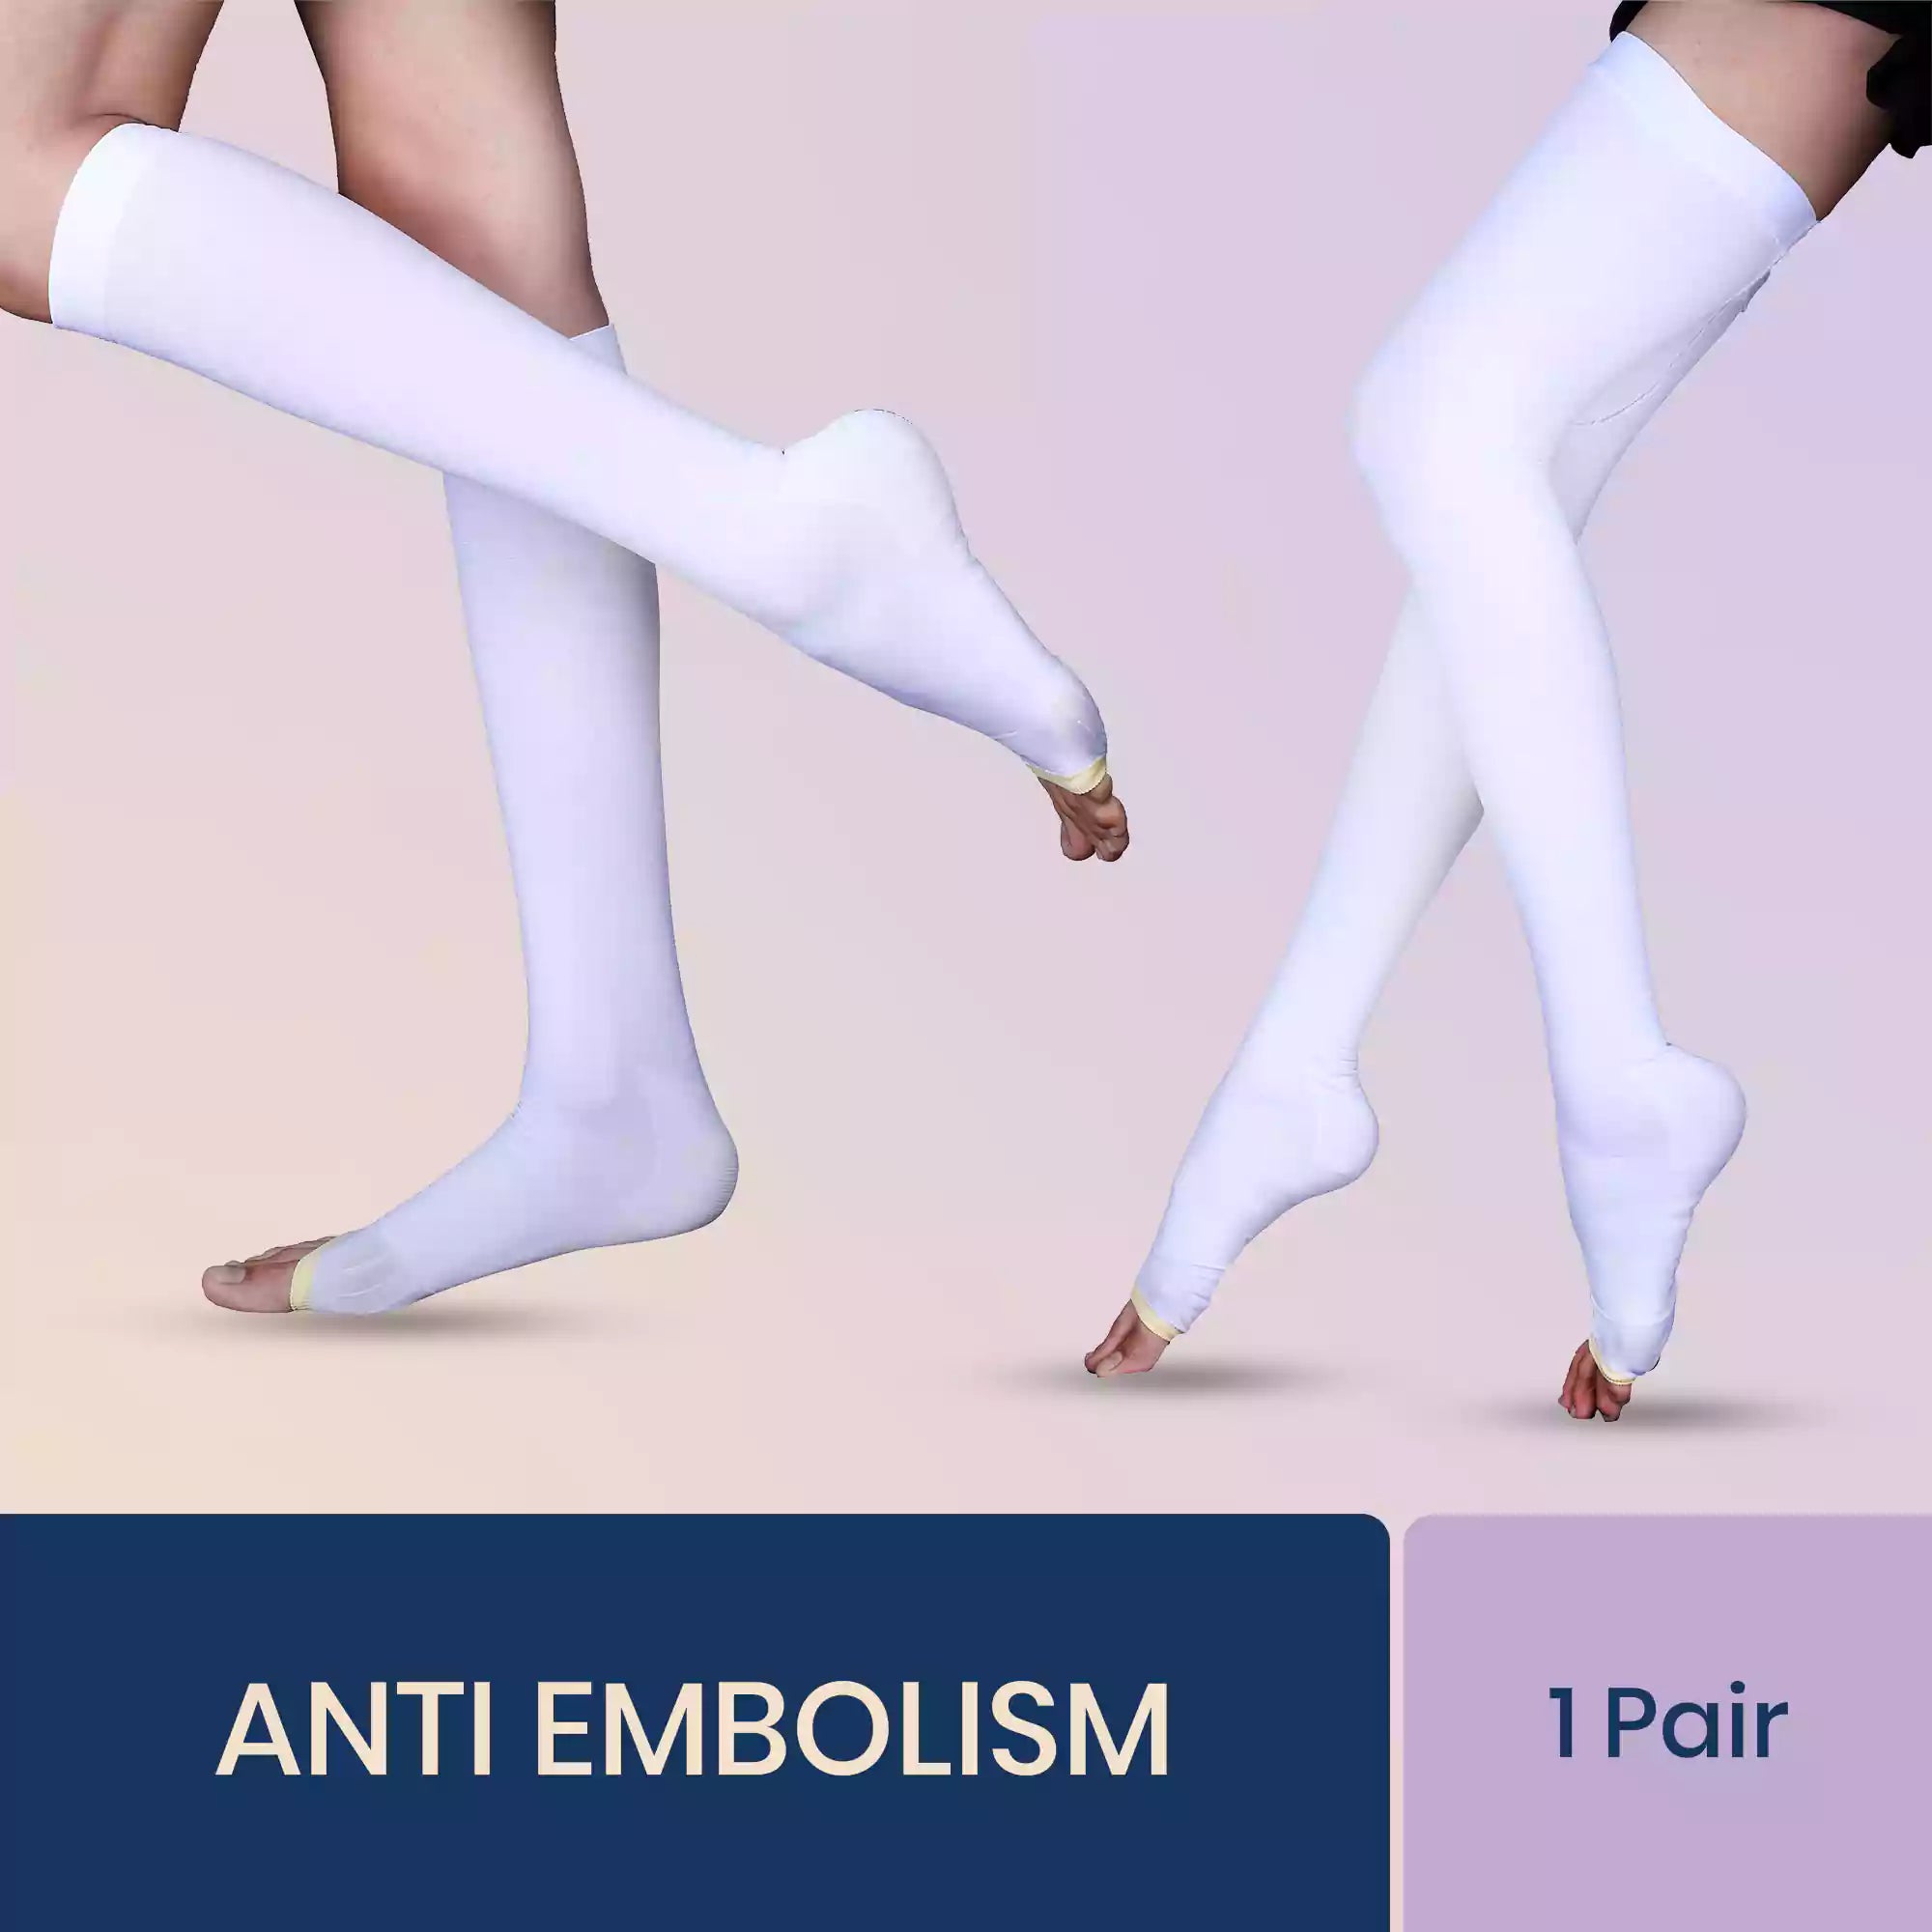 Buy Anti Embolism Stockings (D.V.T.) Class 1 Thigh High (Pair